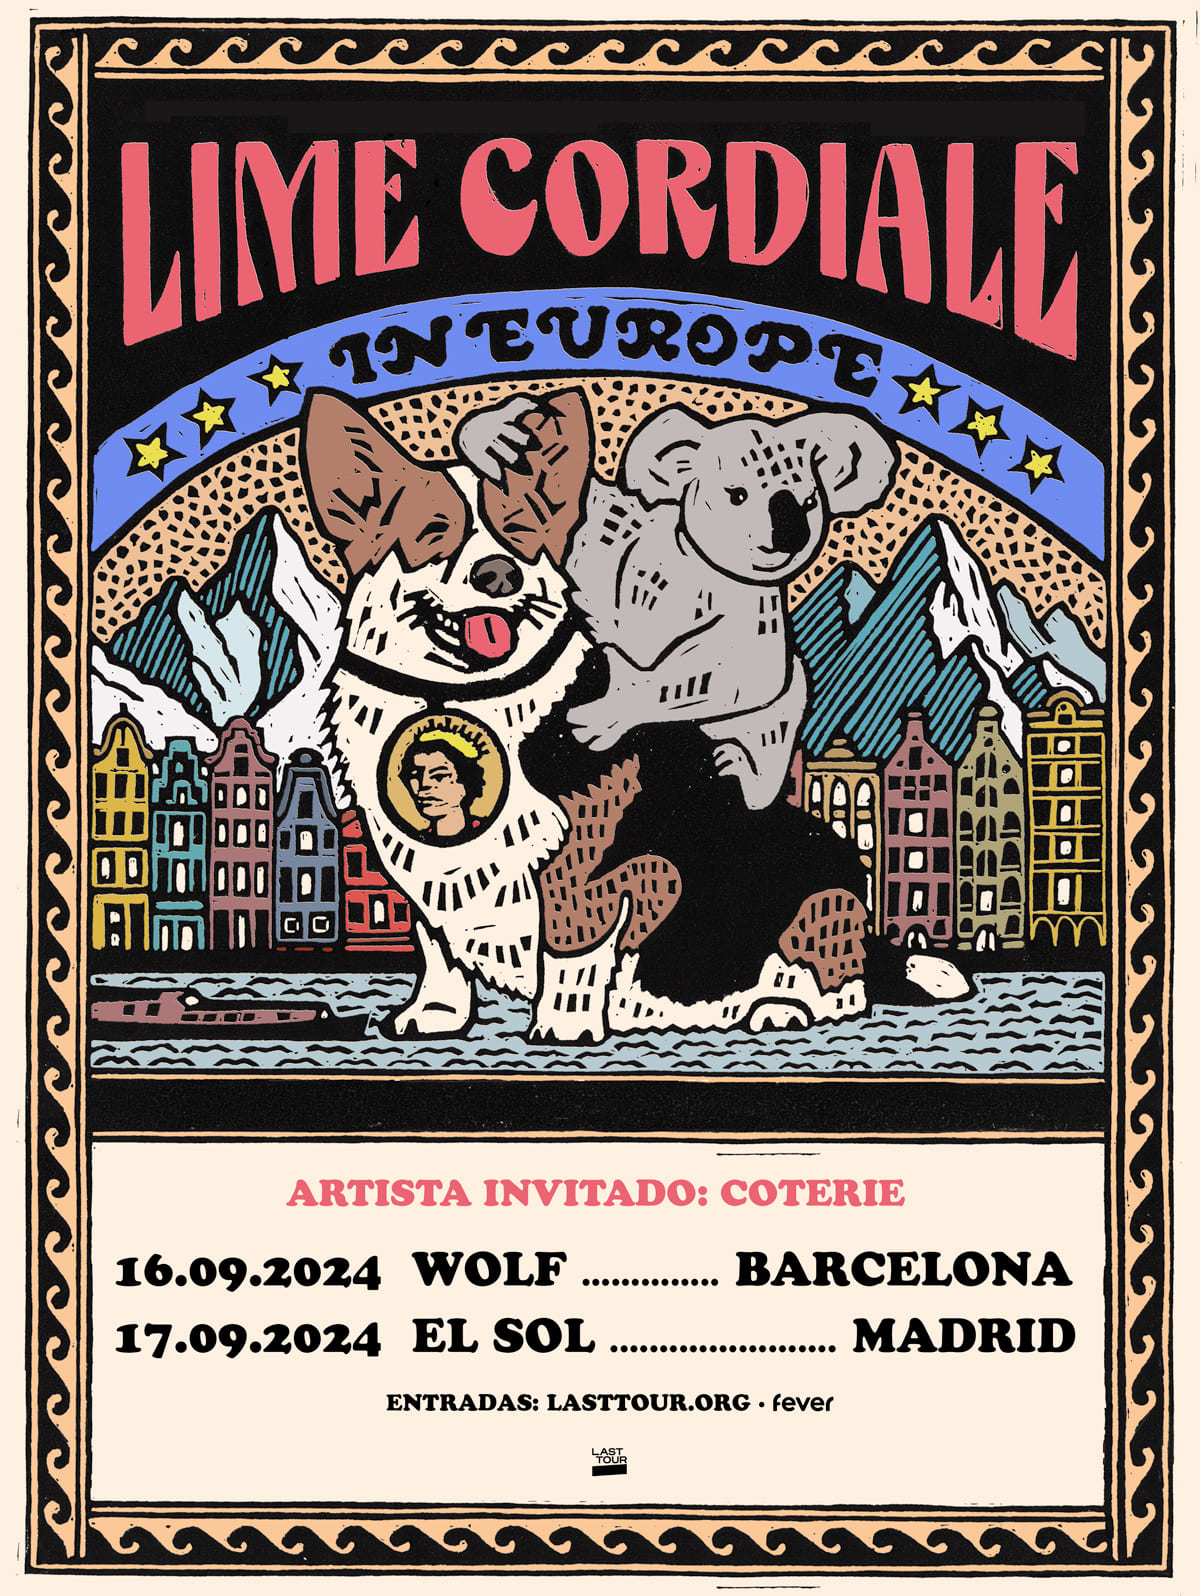 Lime Cordiale actuarán en Madrid y Barcelona junto con la banda Coterie